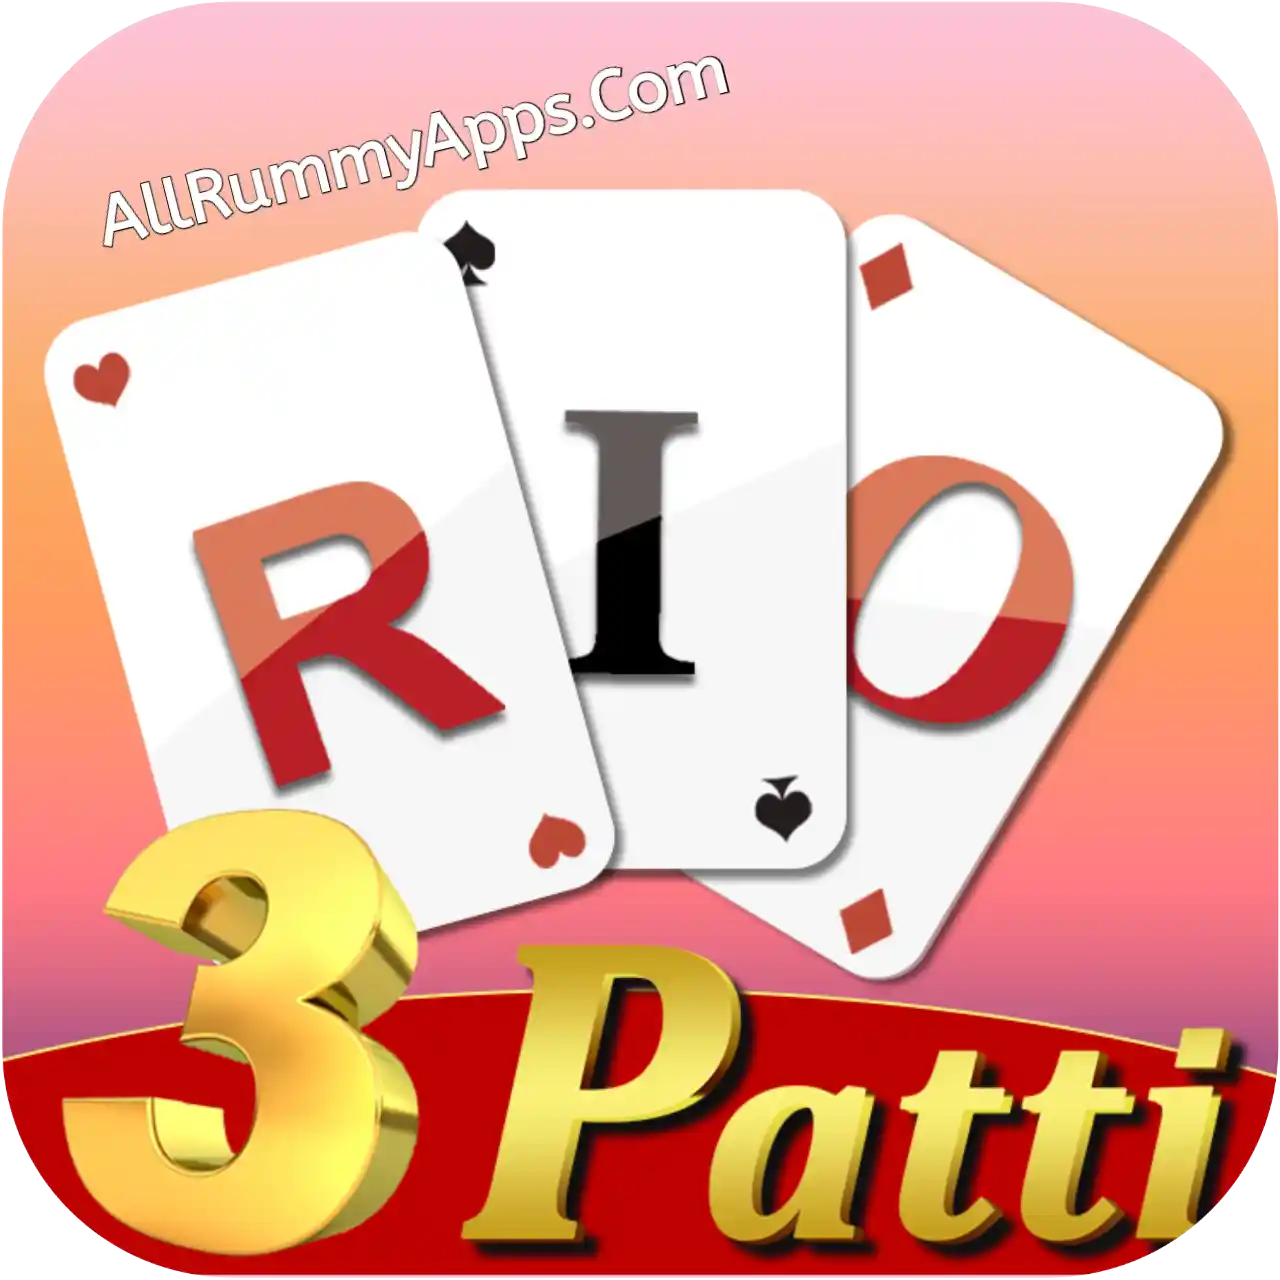 Rio 3Patti - All Rummy App